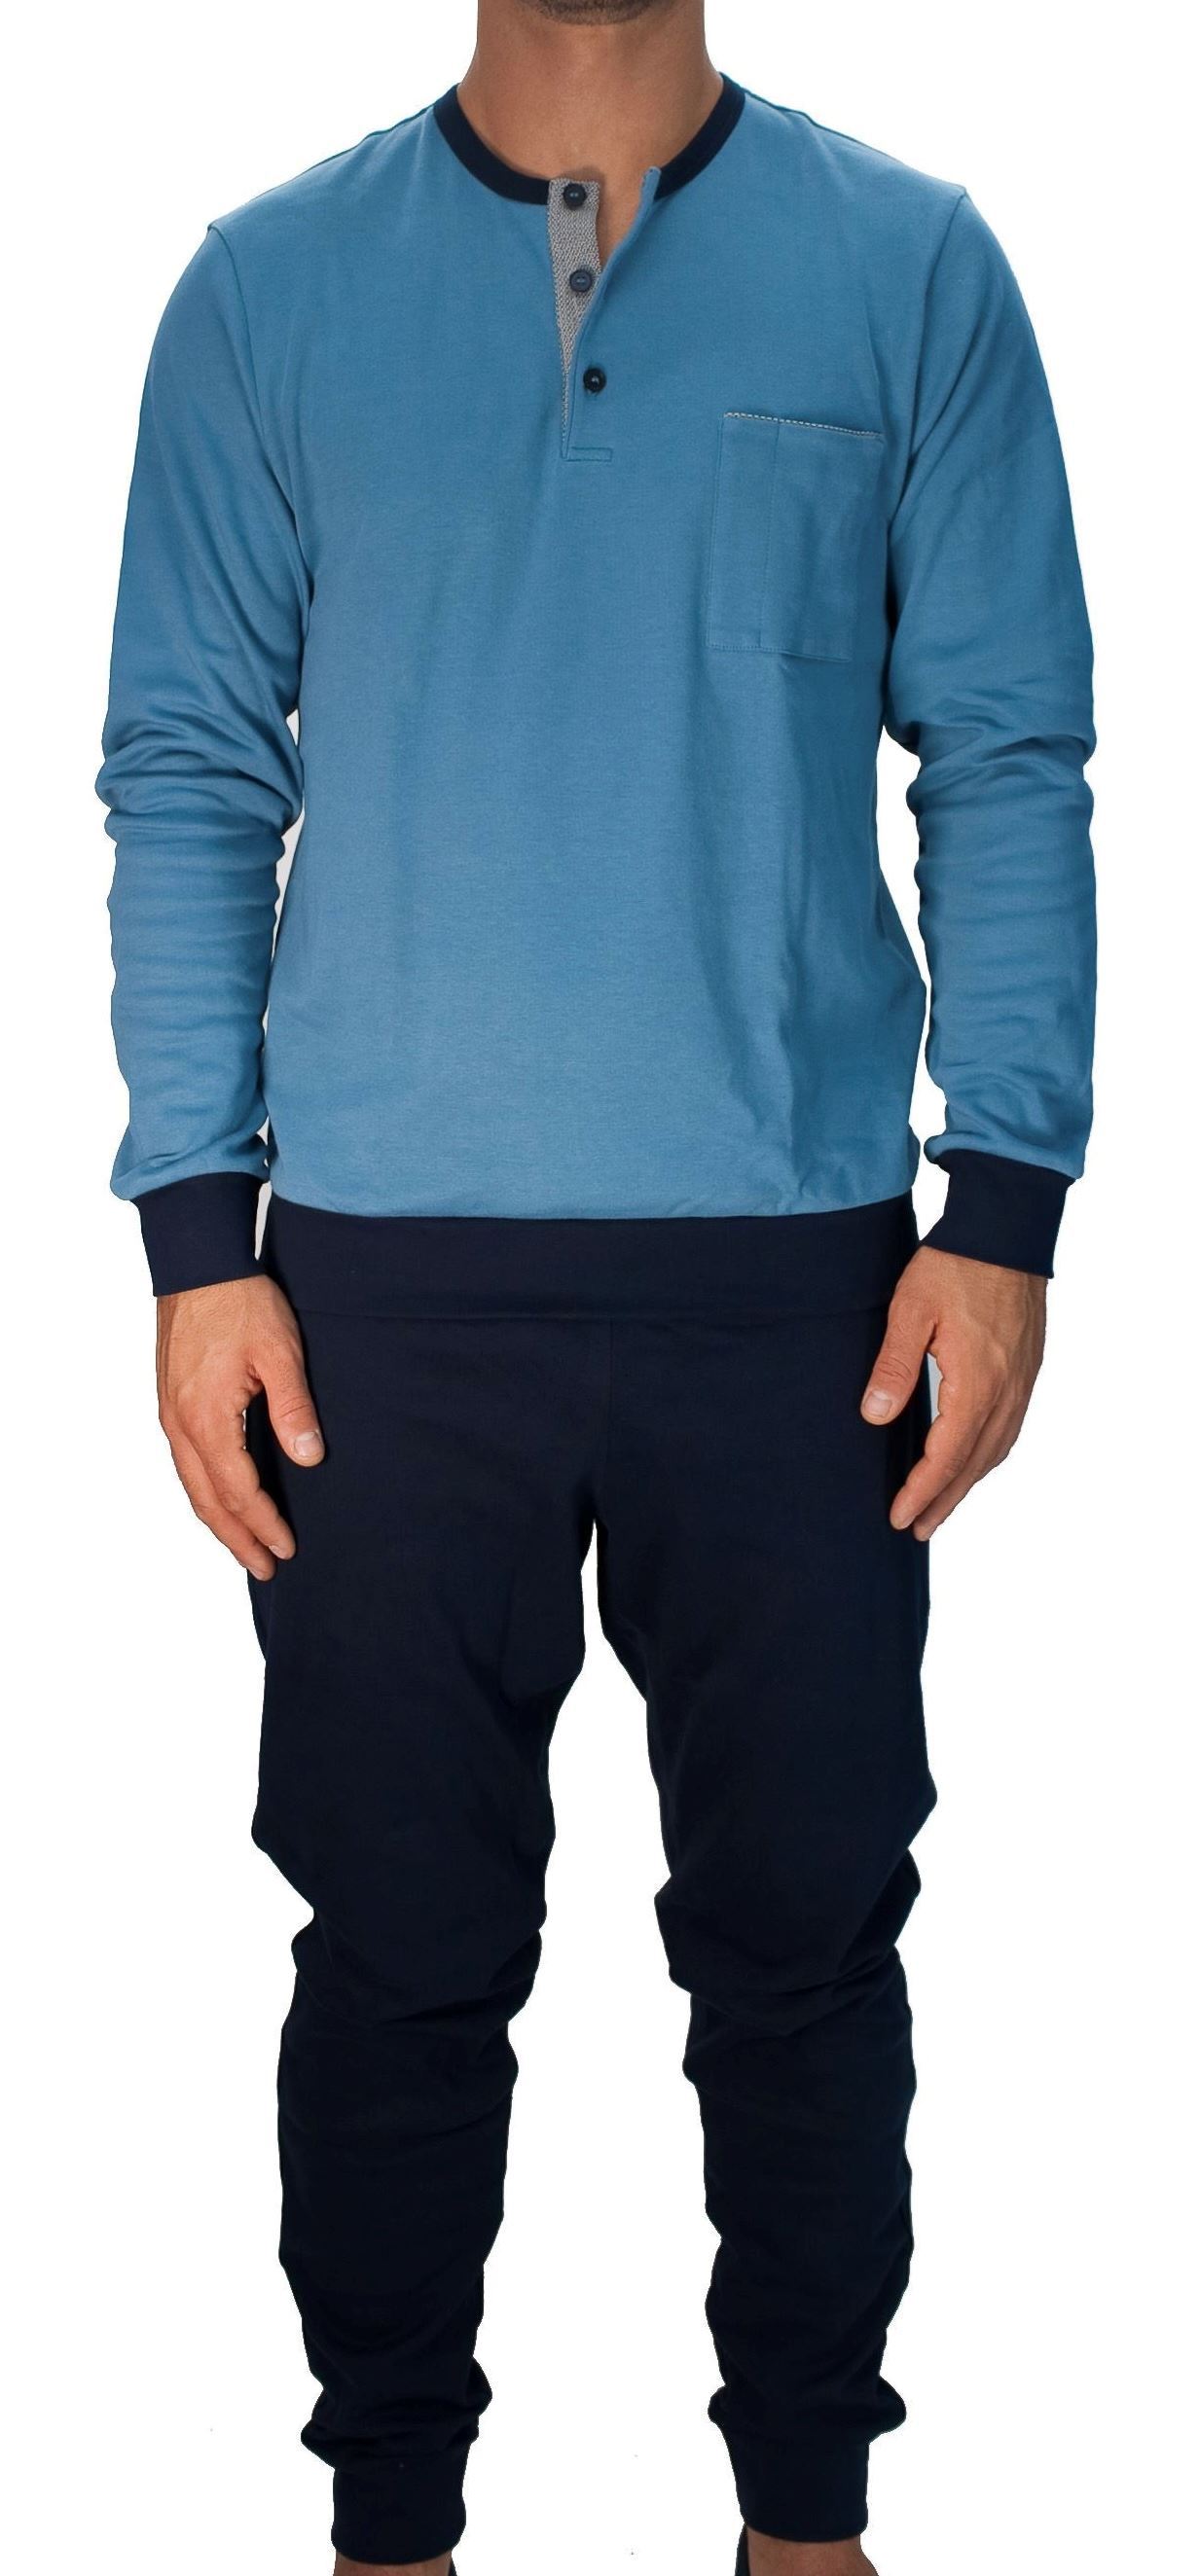 Immagine di Pigiama jersey peso intermedio azzurro